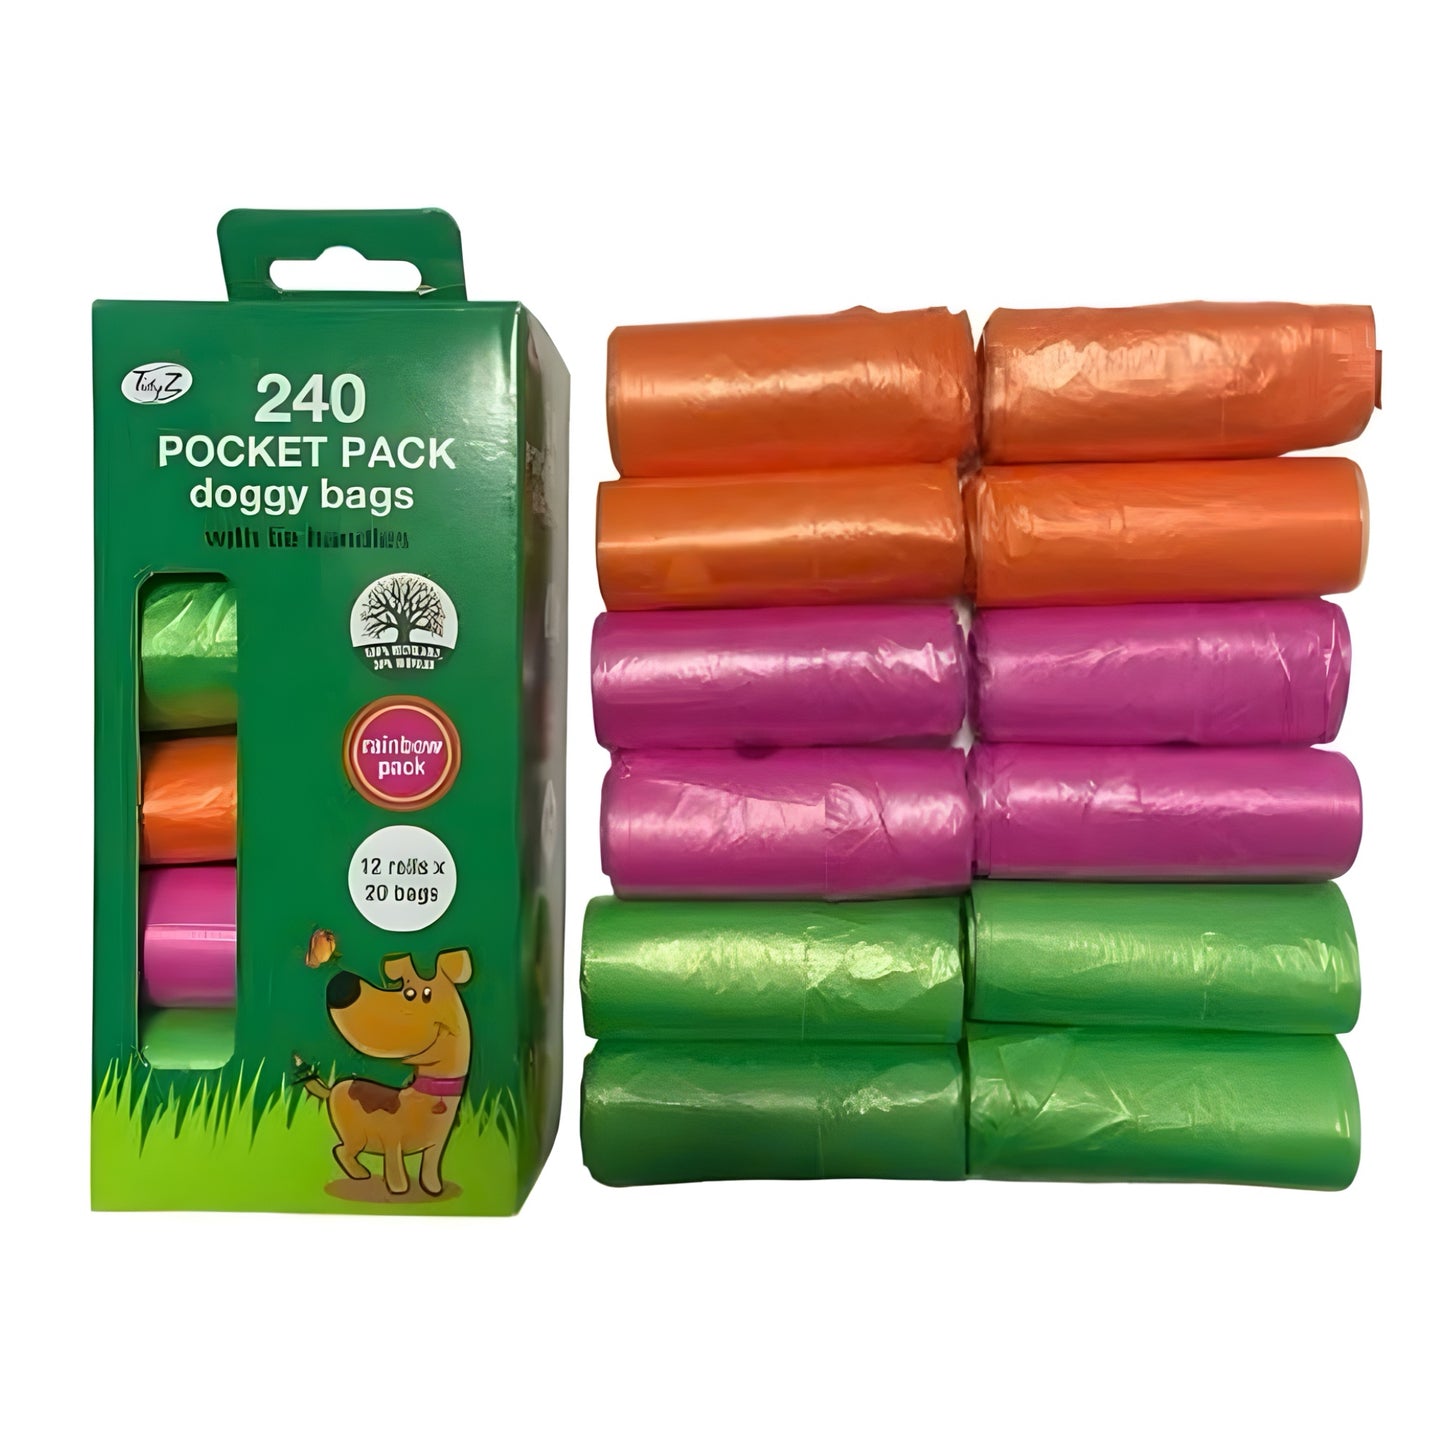 TIDYZ Pocket RAINBOW Assorted Colour Tie Handle Doggy Bag 240 PACK